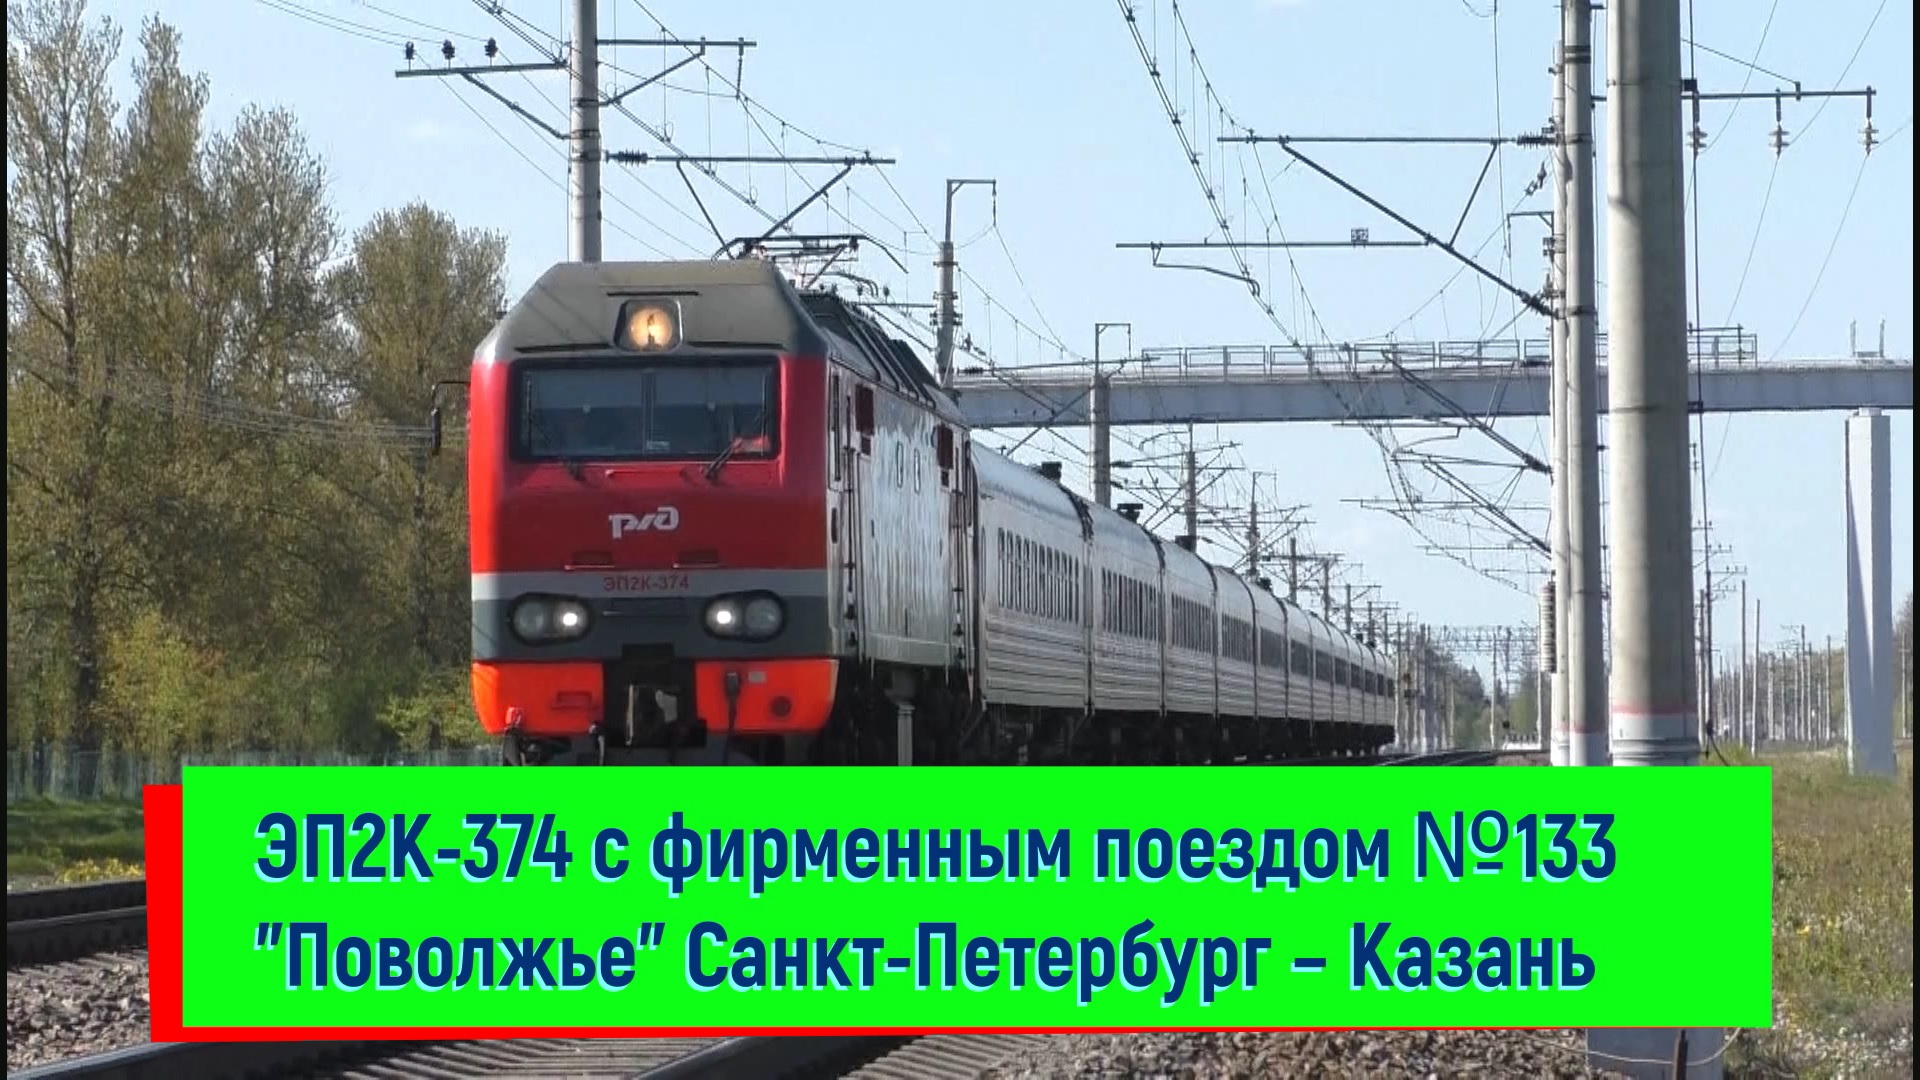 ЭП2К-374 с фирменным поездом №133 "Поволжье" Санкт-Петербург – Казань |  EP2K-374